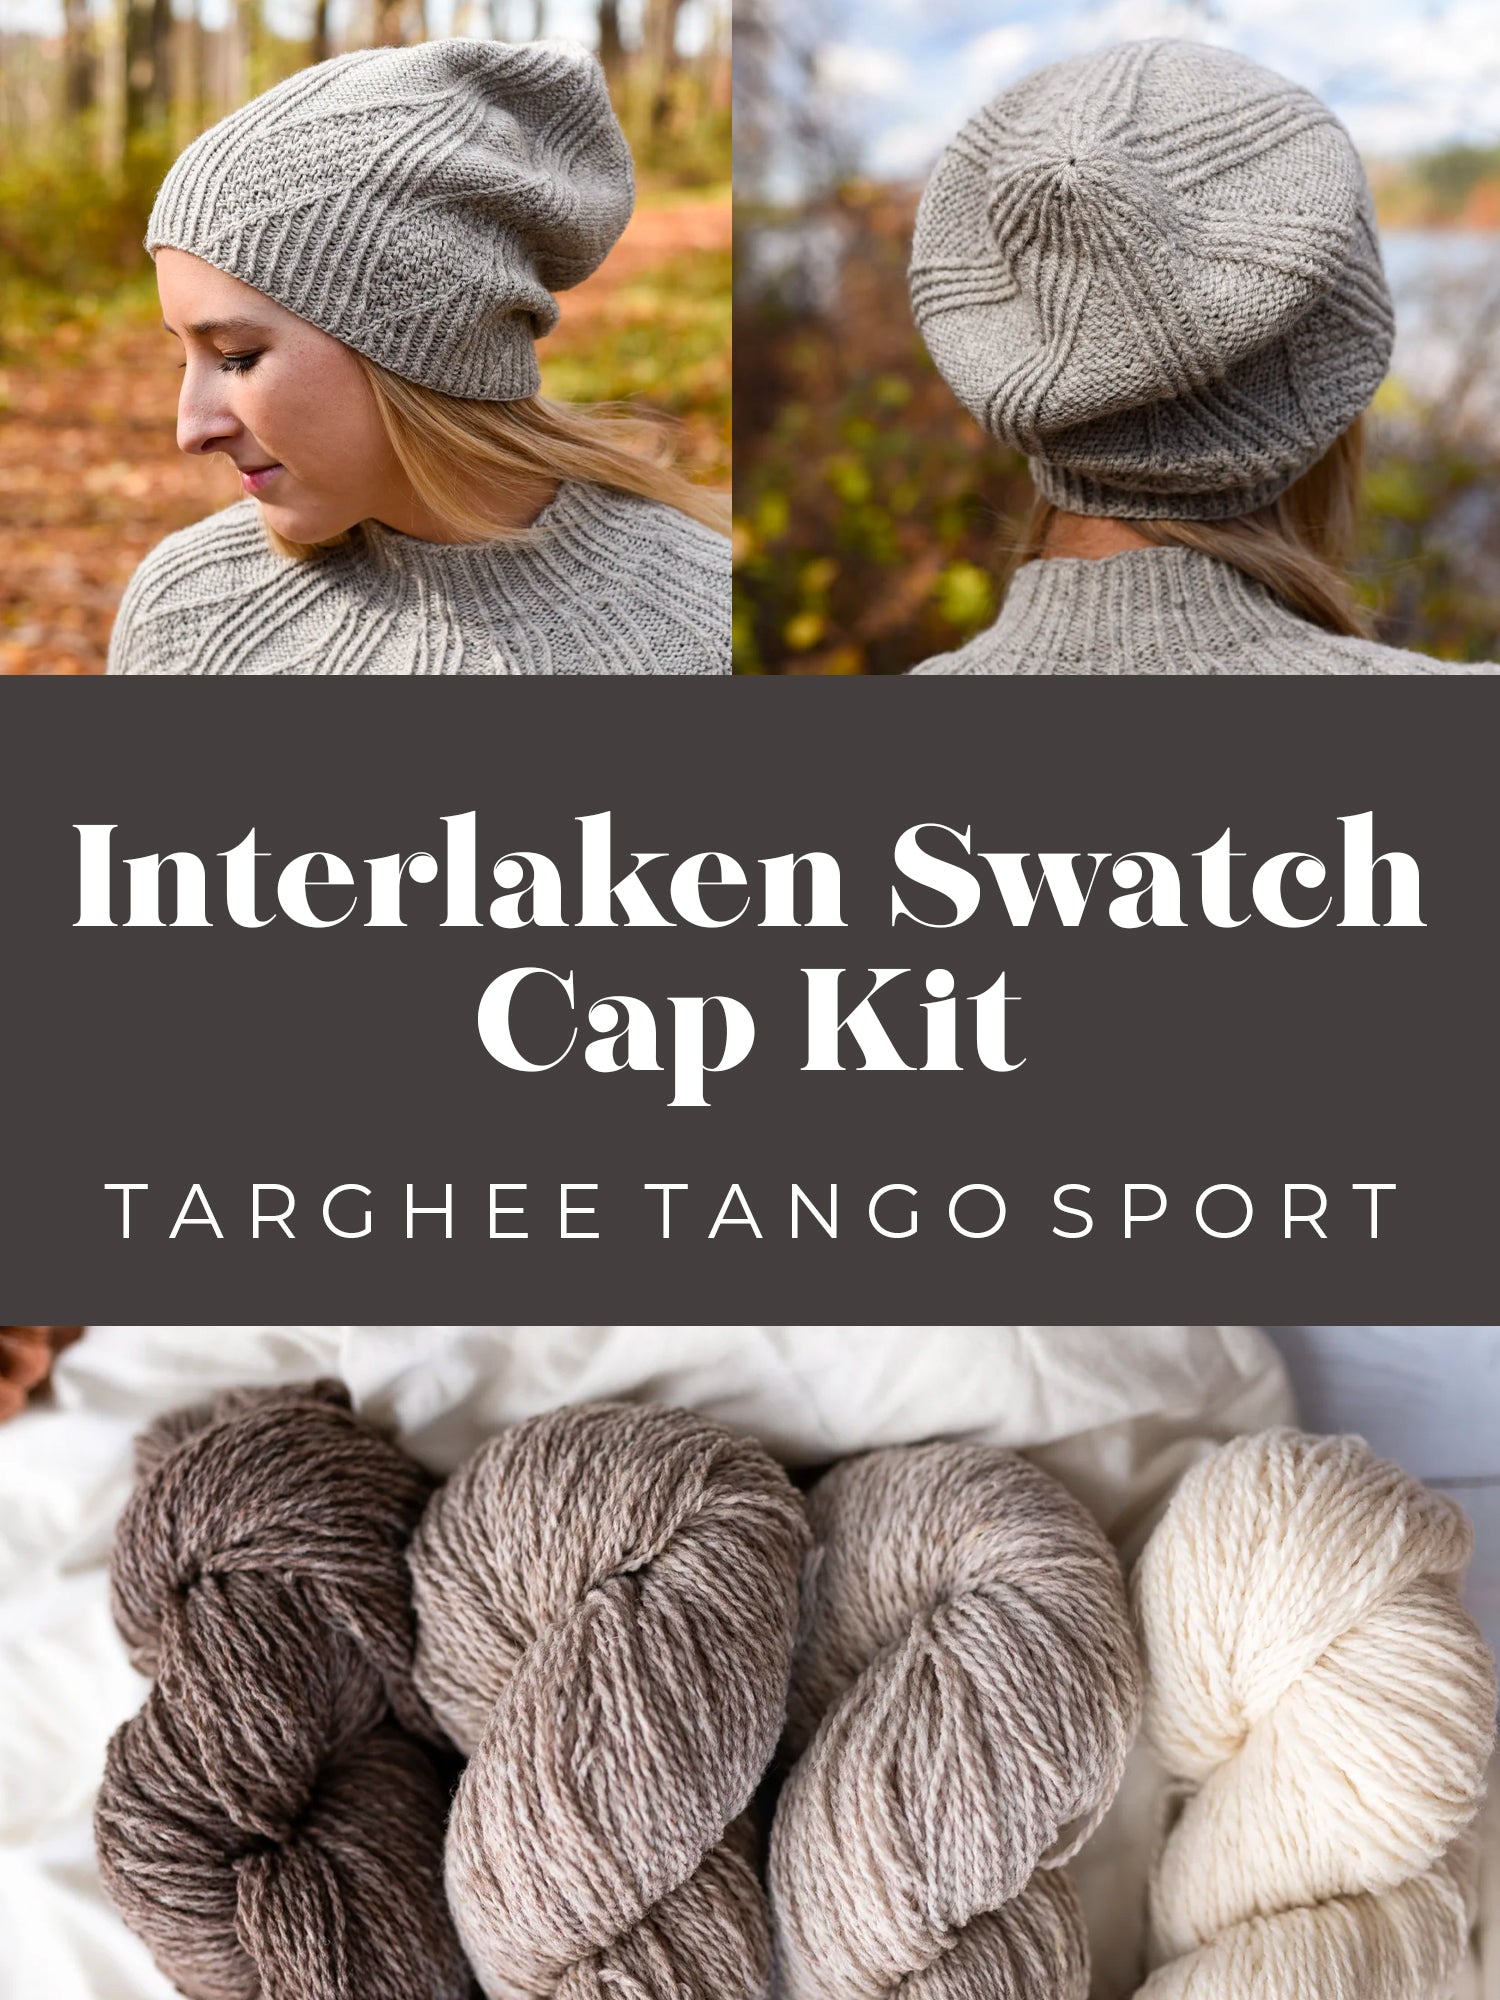 Interlaken Swatch Cap Kit